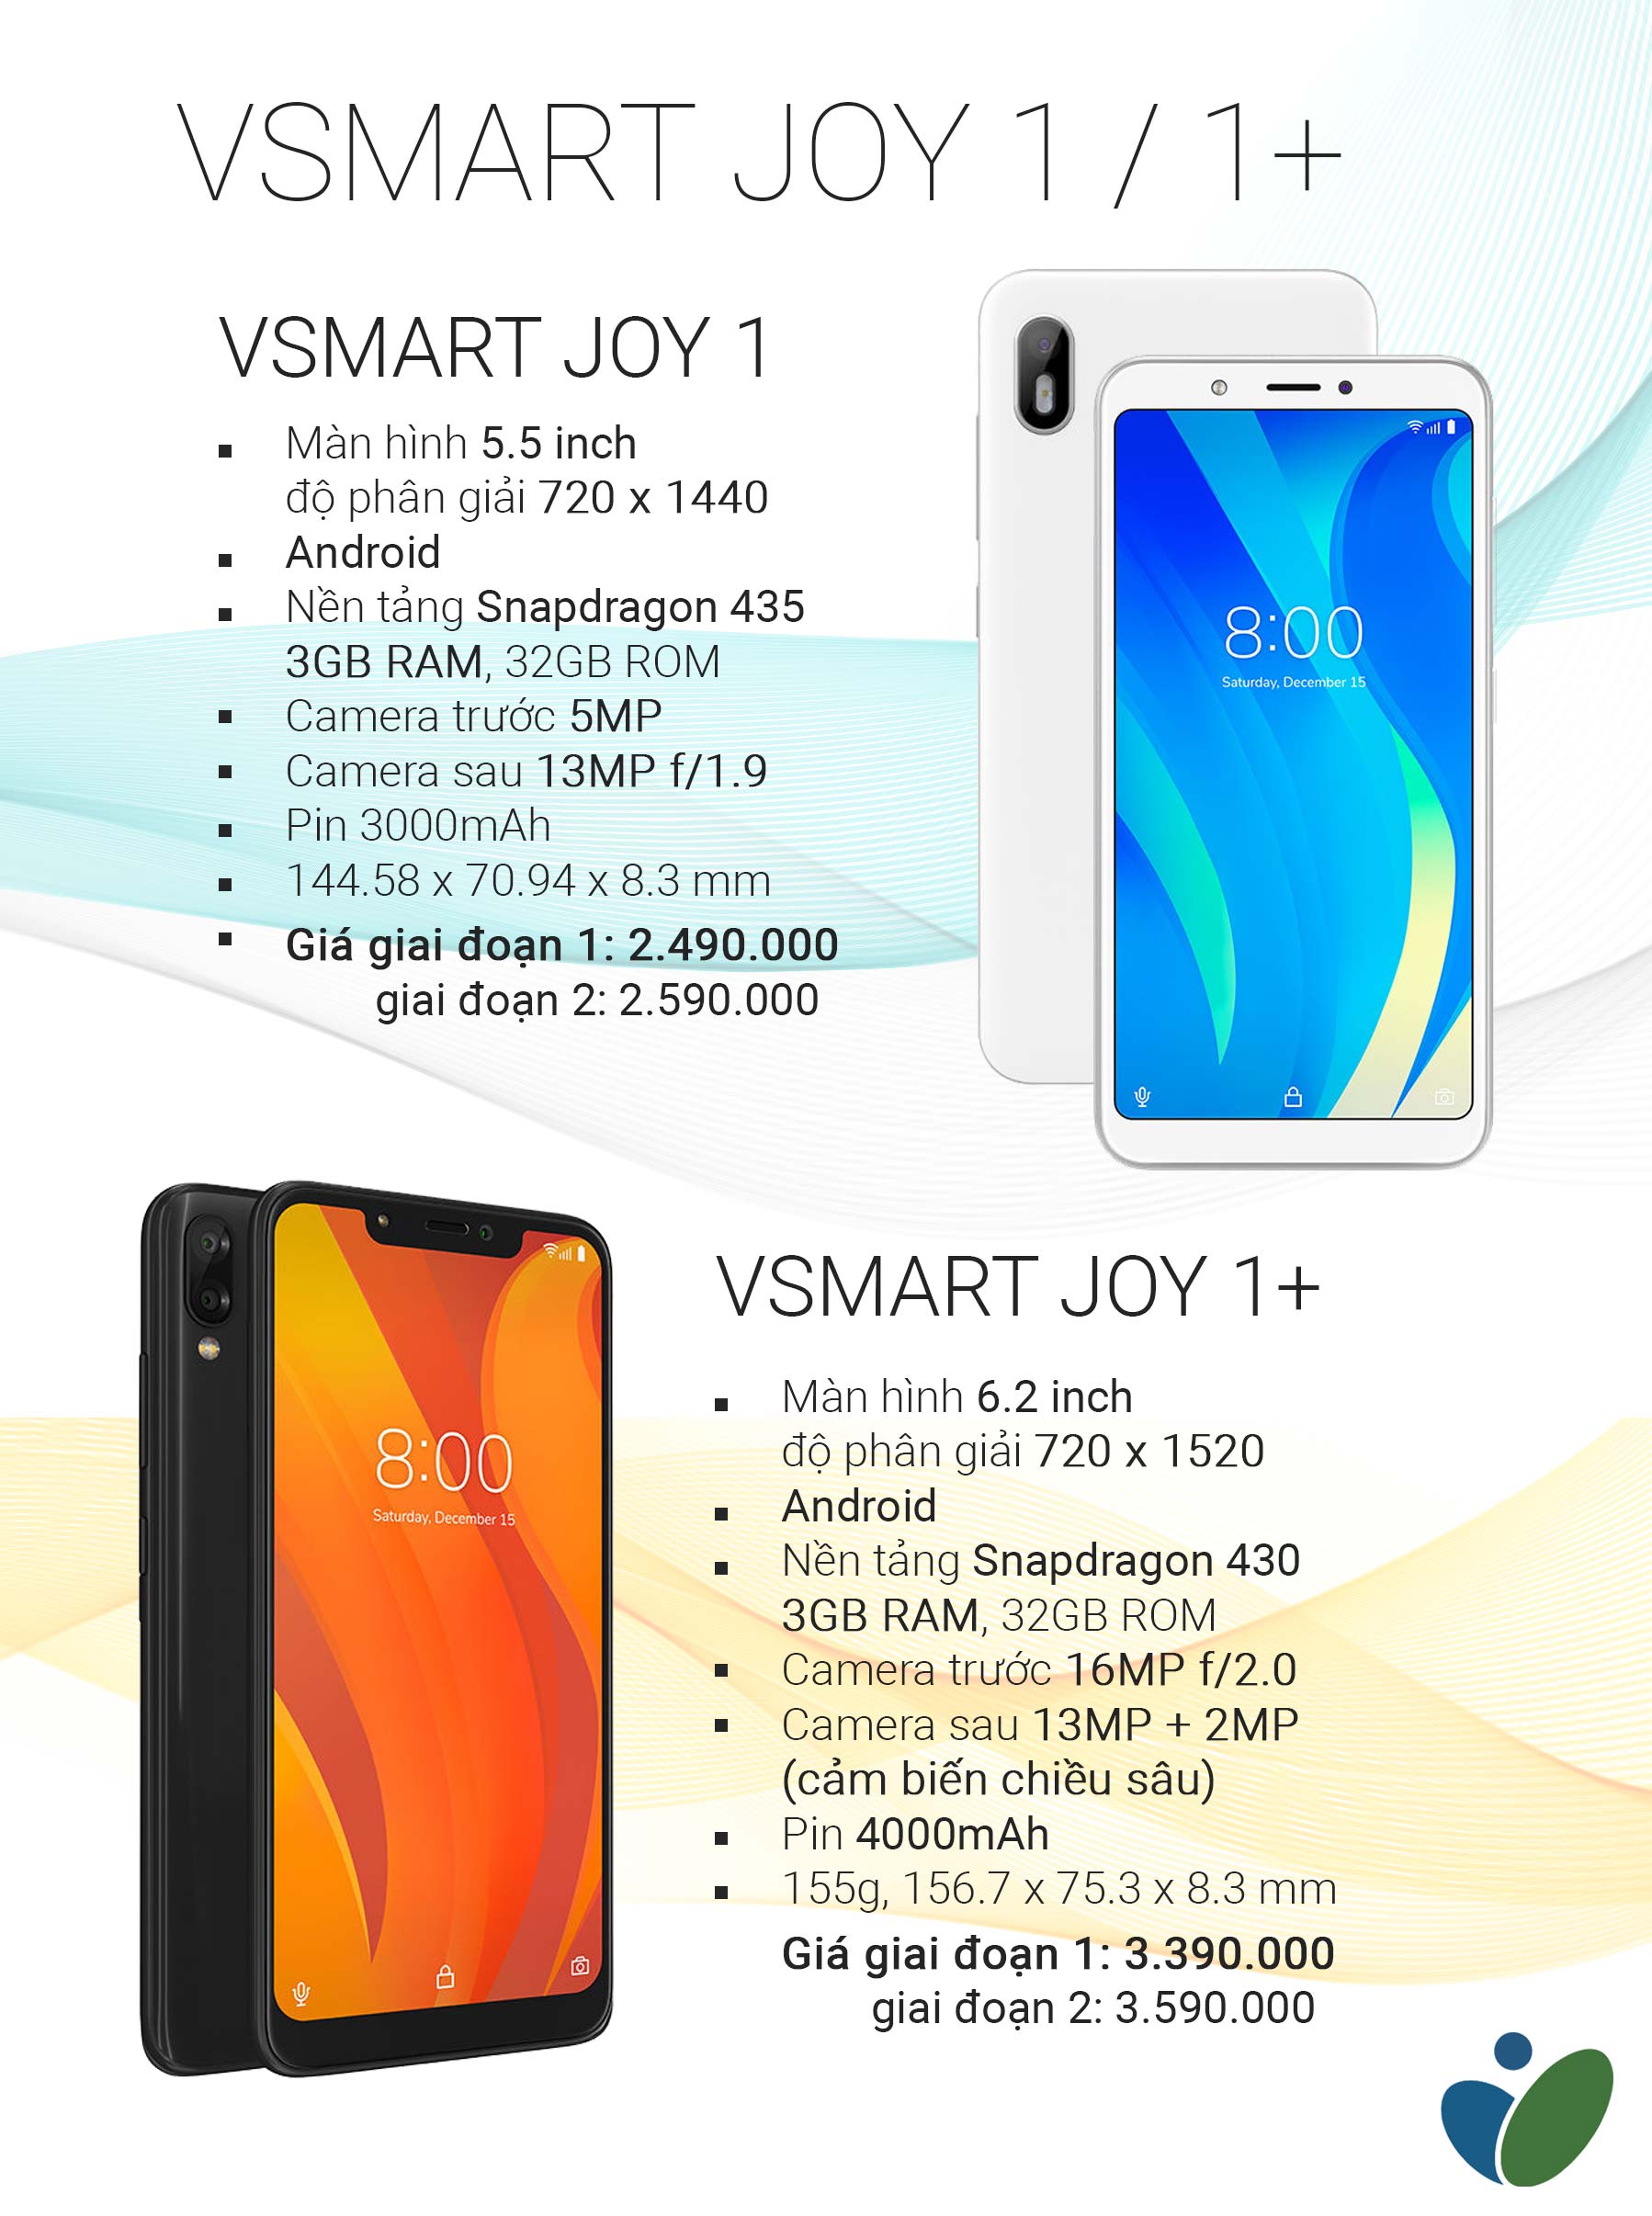 Vsmart  Joy 1+ có những thông số kỹ thuật “khủng” so với các thiết bị cùng tầm phân khúc